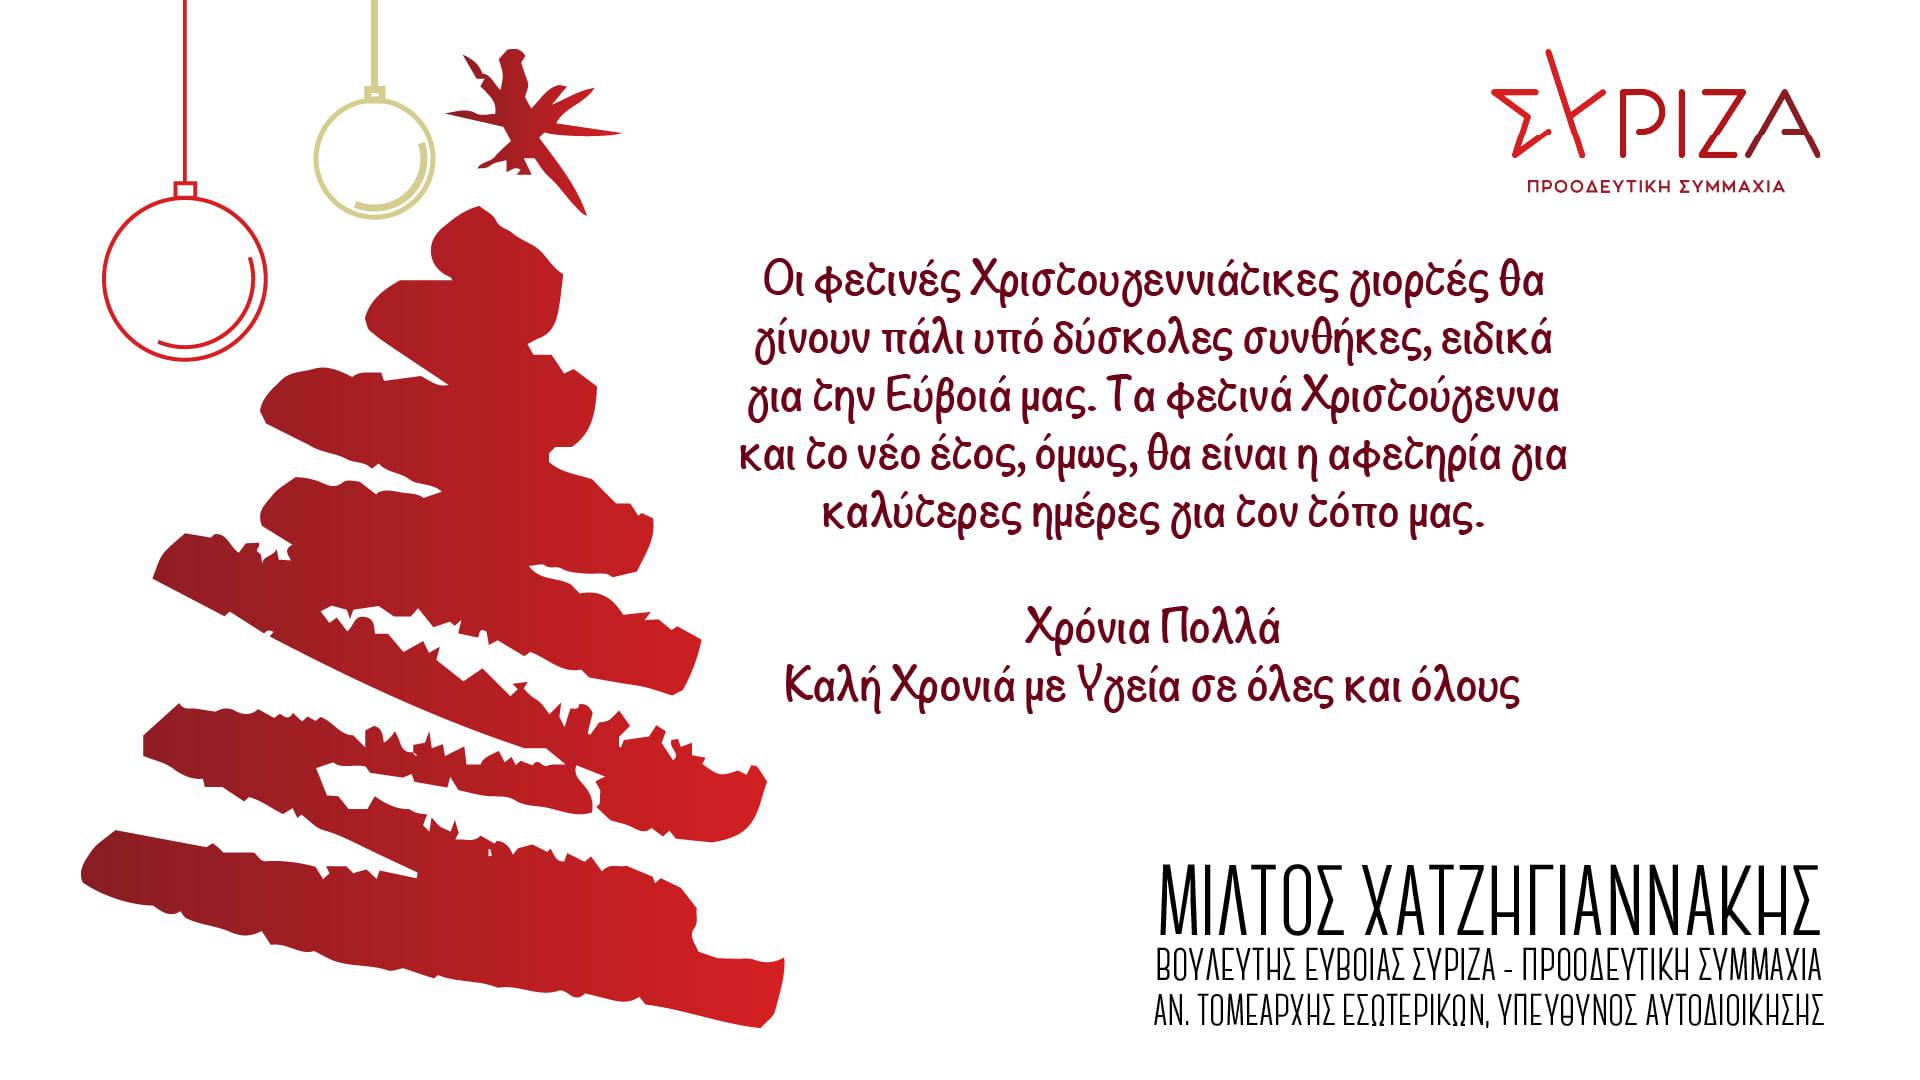 Μίλτος Χατζηγιαννάκης: Τα φετινά Χριστούγεννα και το νέο έτος, θα είναι η αφετηρία για καλύτερες ημέρες στον τόπο μας